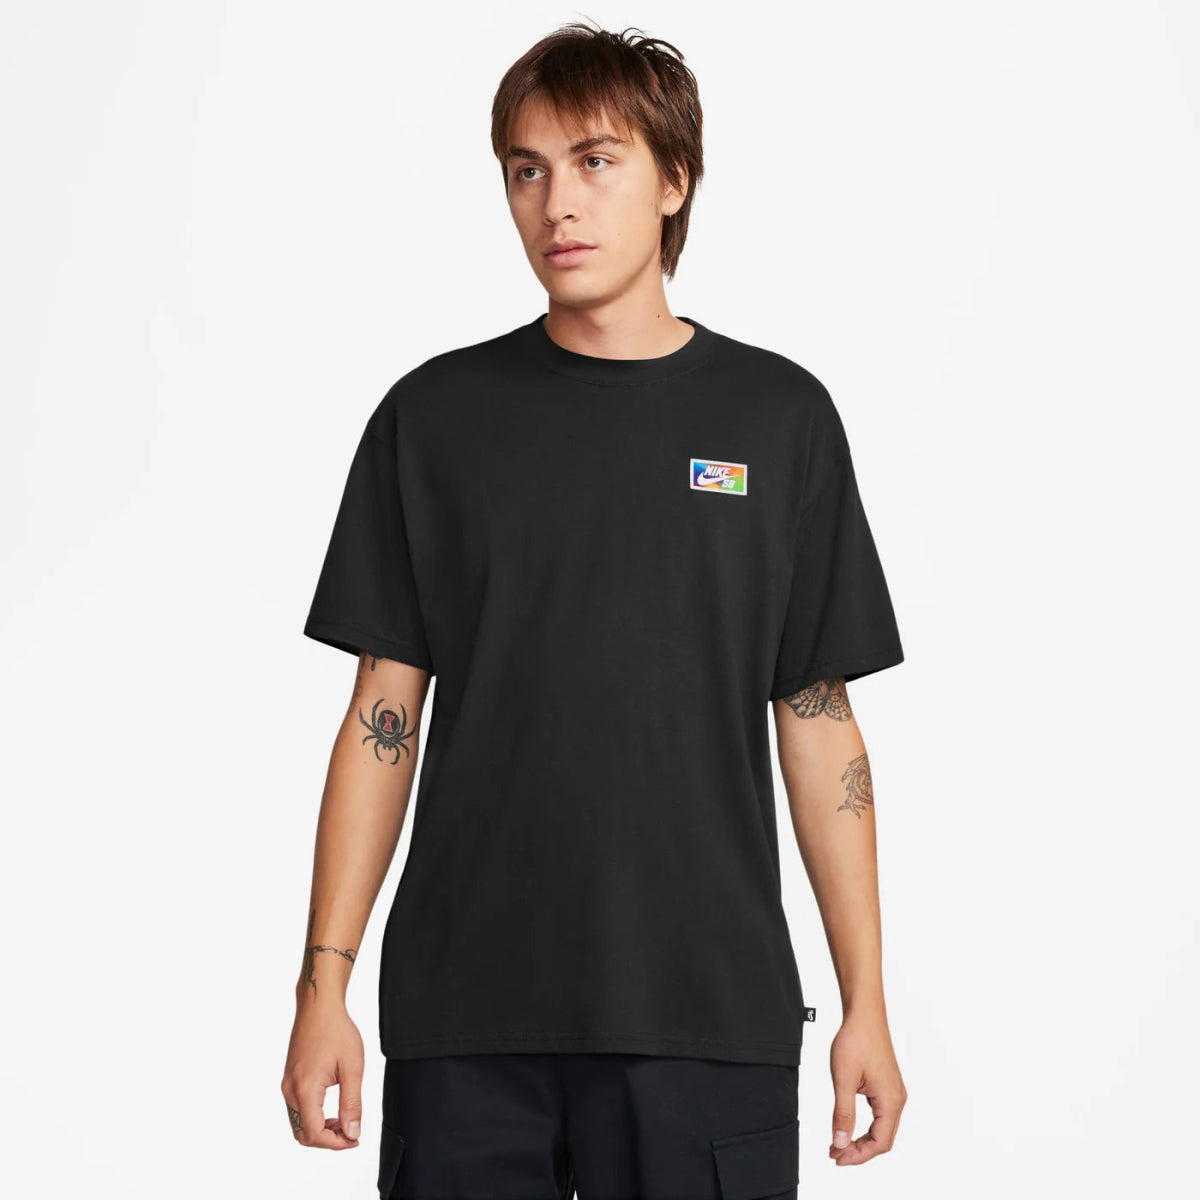 Nike SB Fingerprint Skate T-Shirt in Black - Goodnews Skateshop